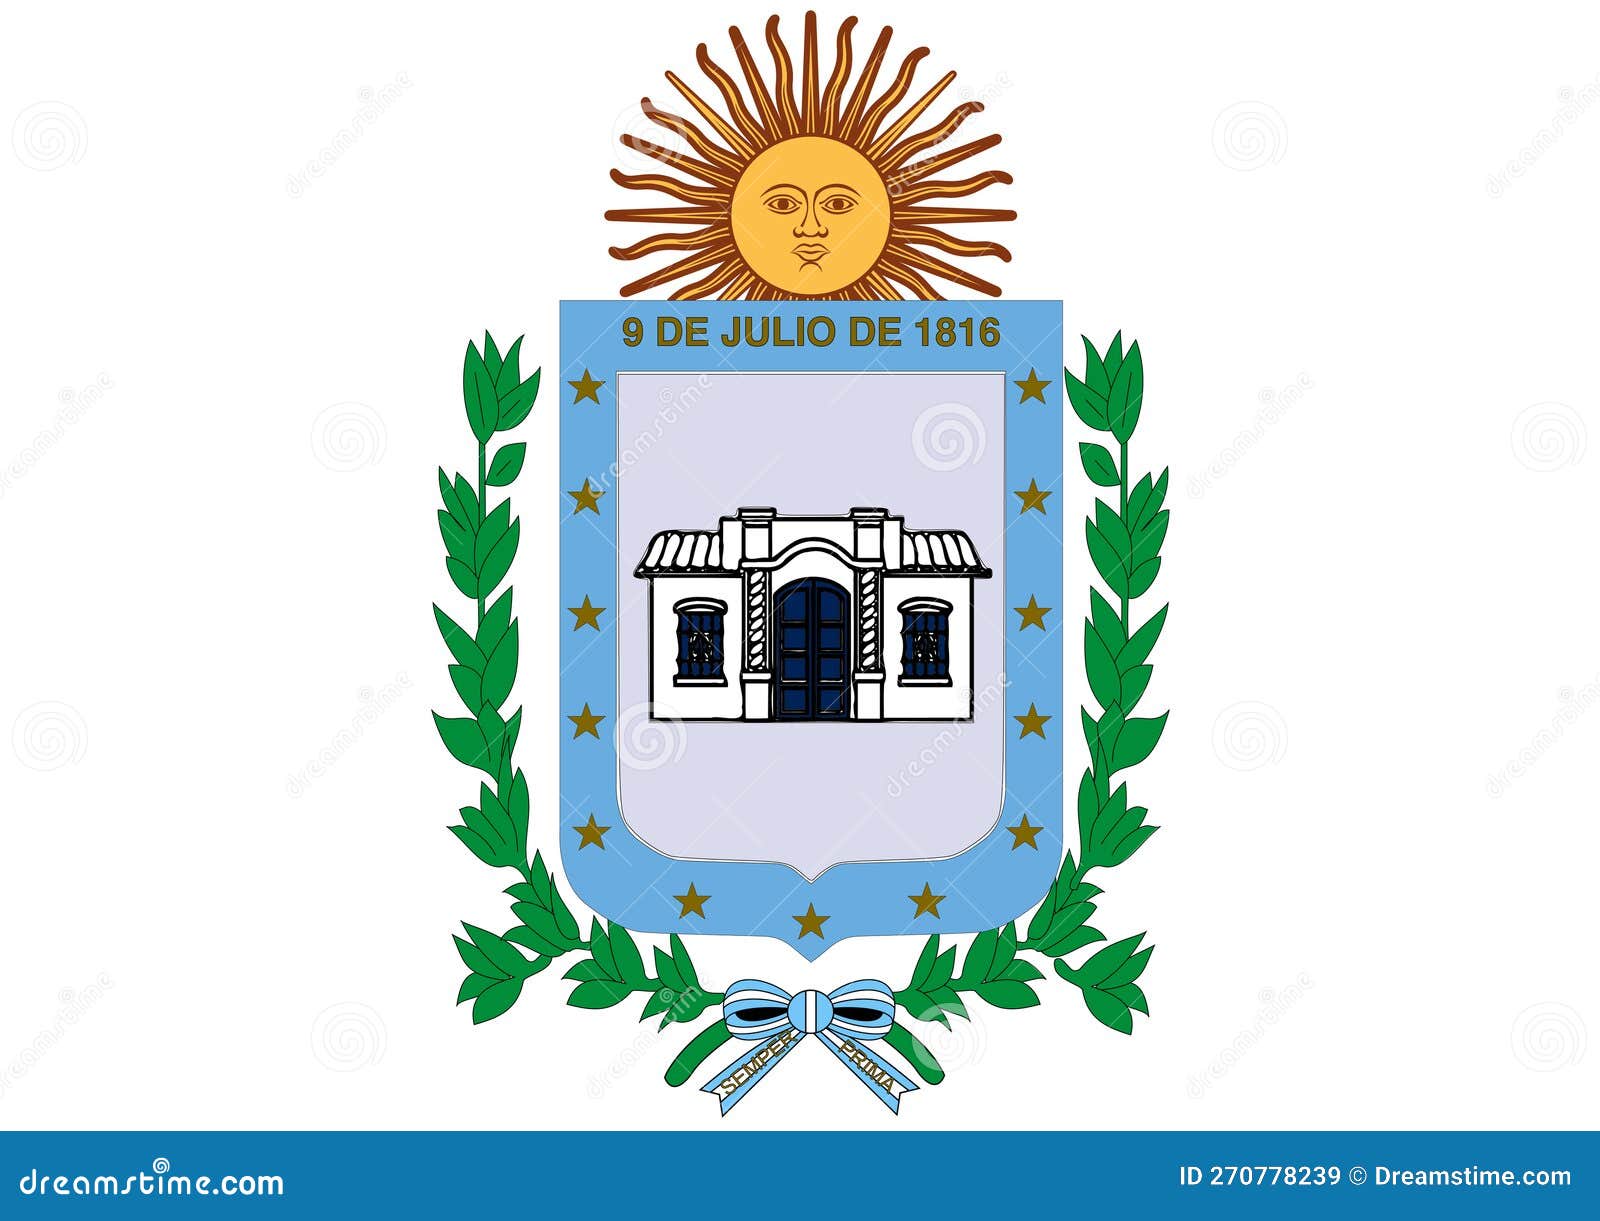 coat of arma of municipalidad de san miguel de tucuman